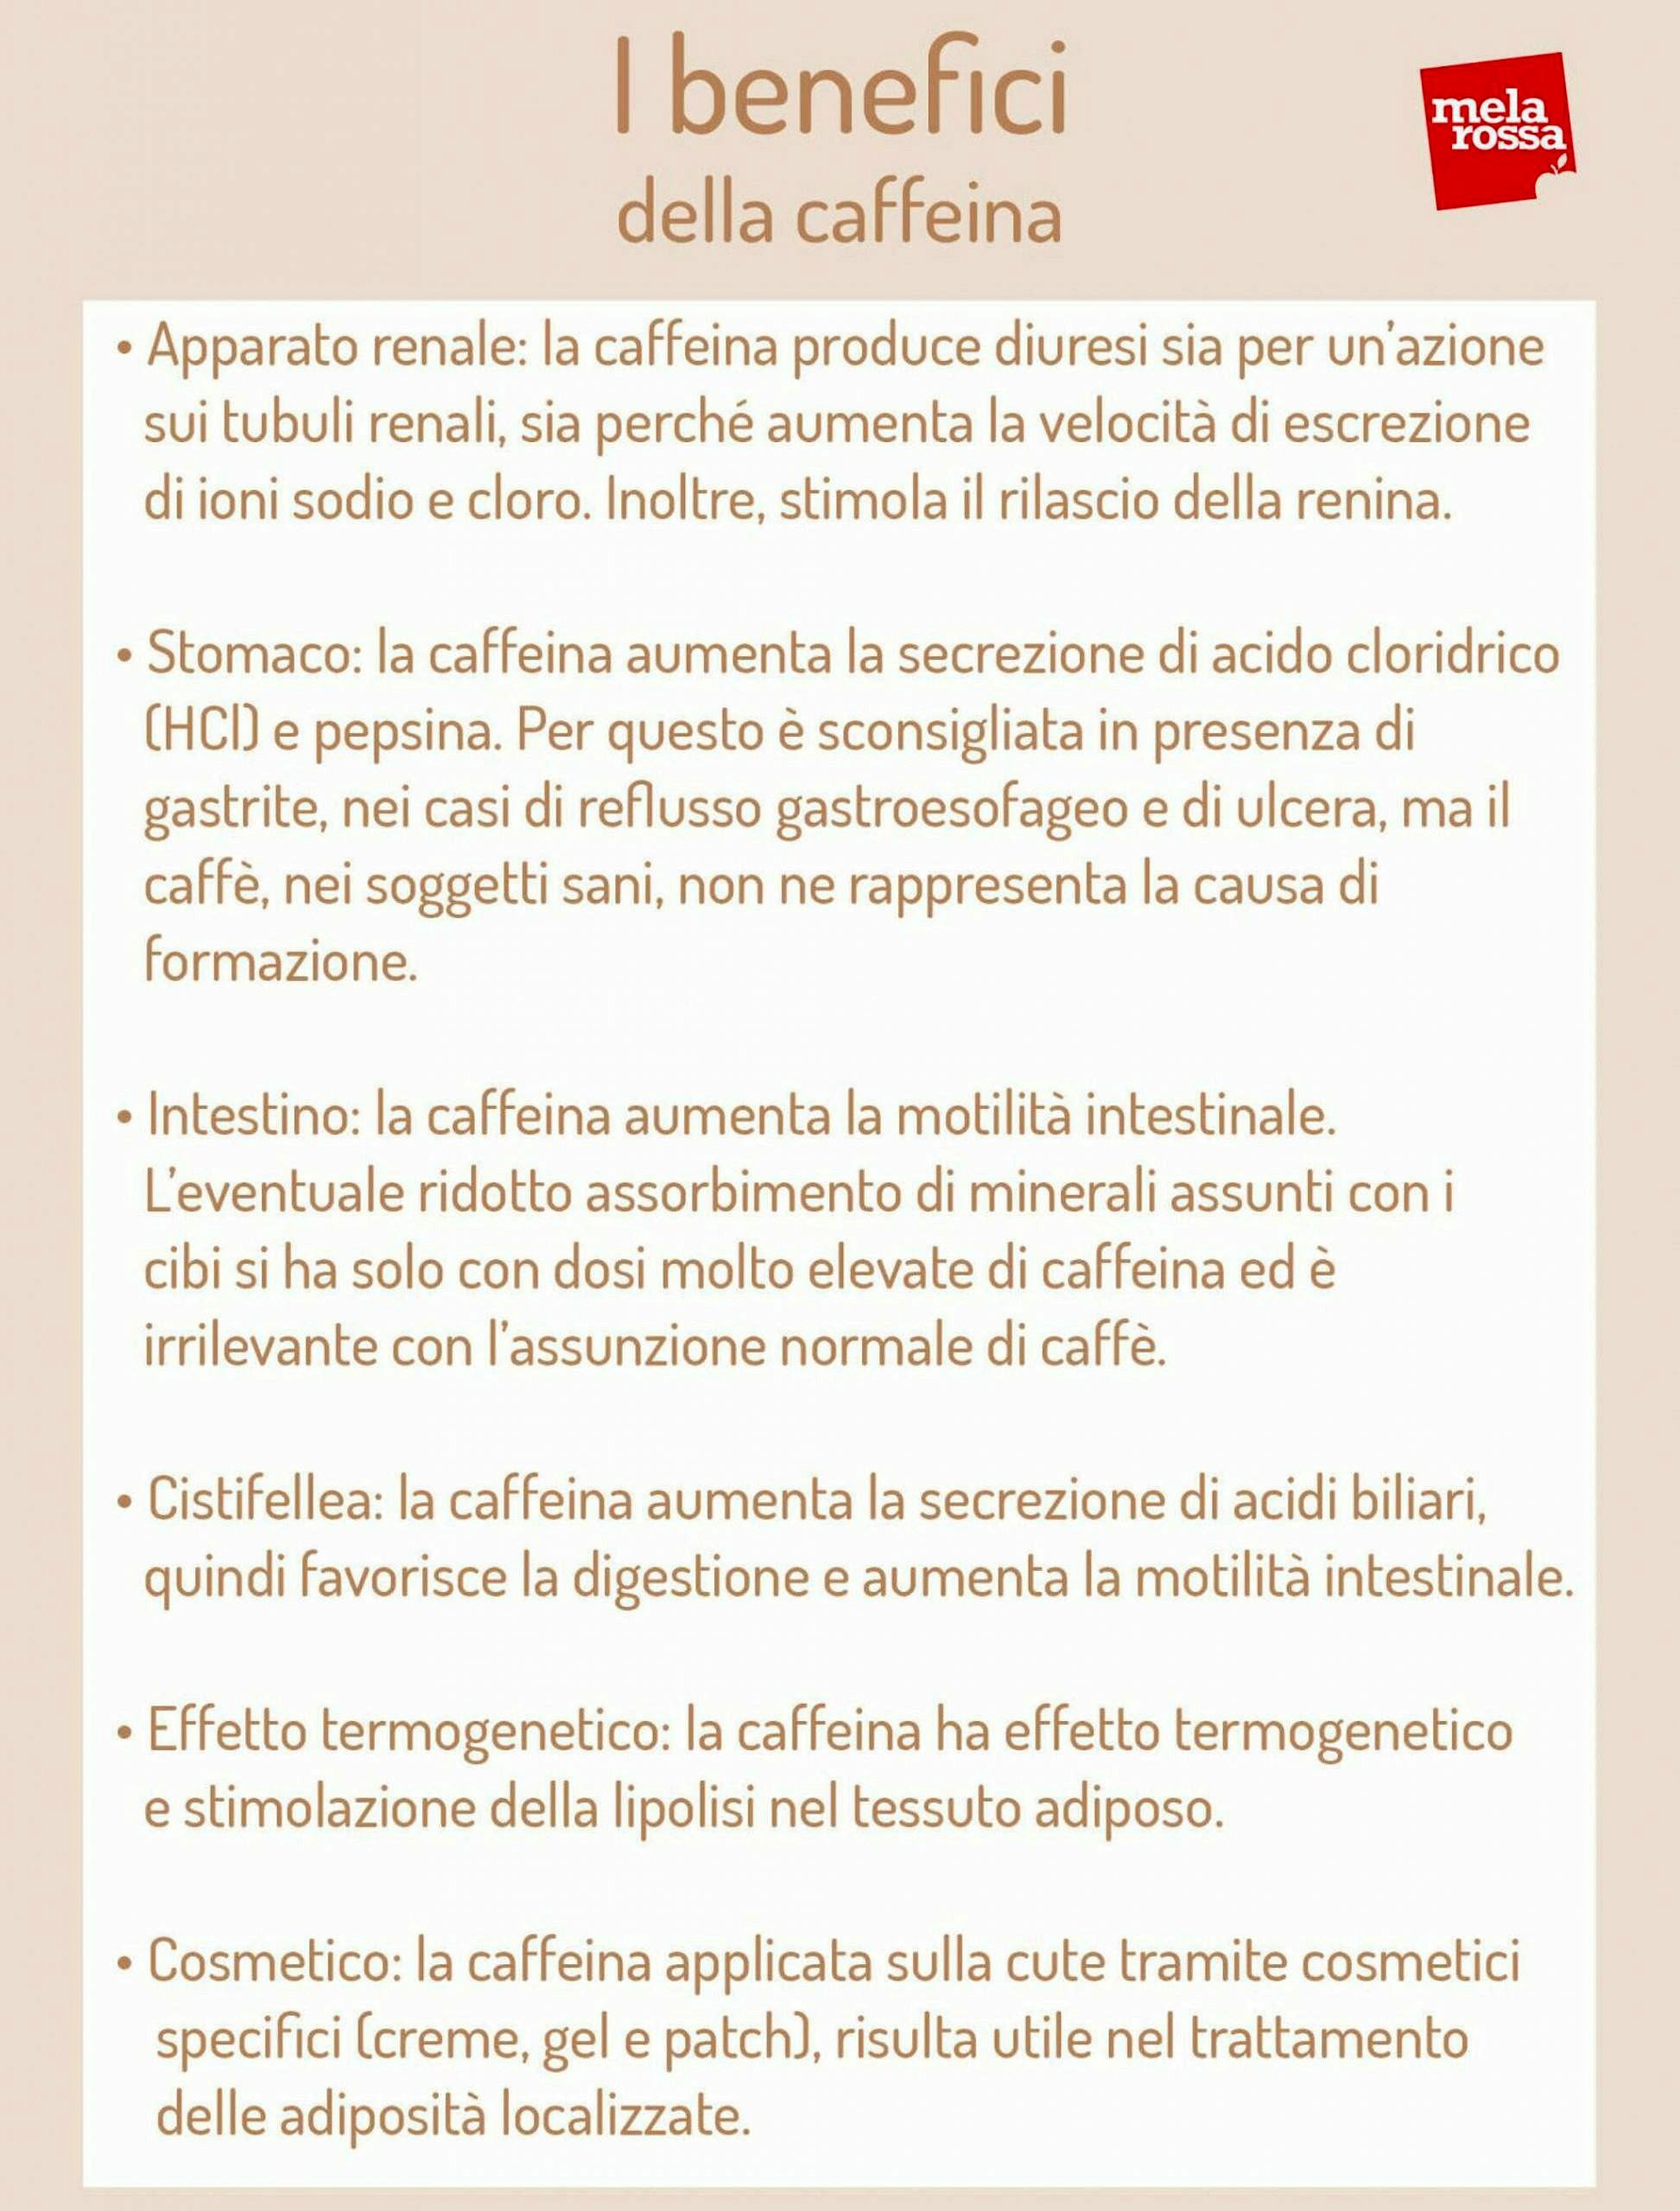 Relazione Tra Lintensita Del Caffe E La Caffeina